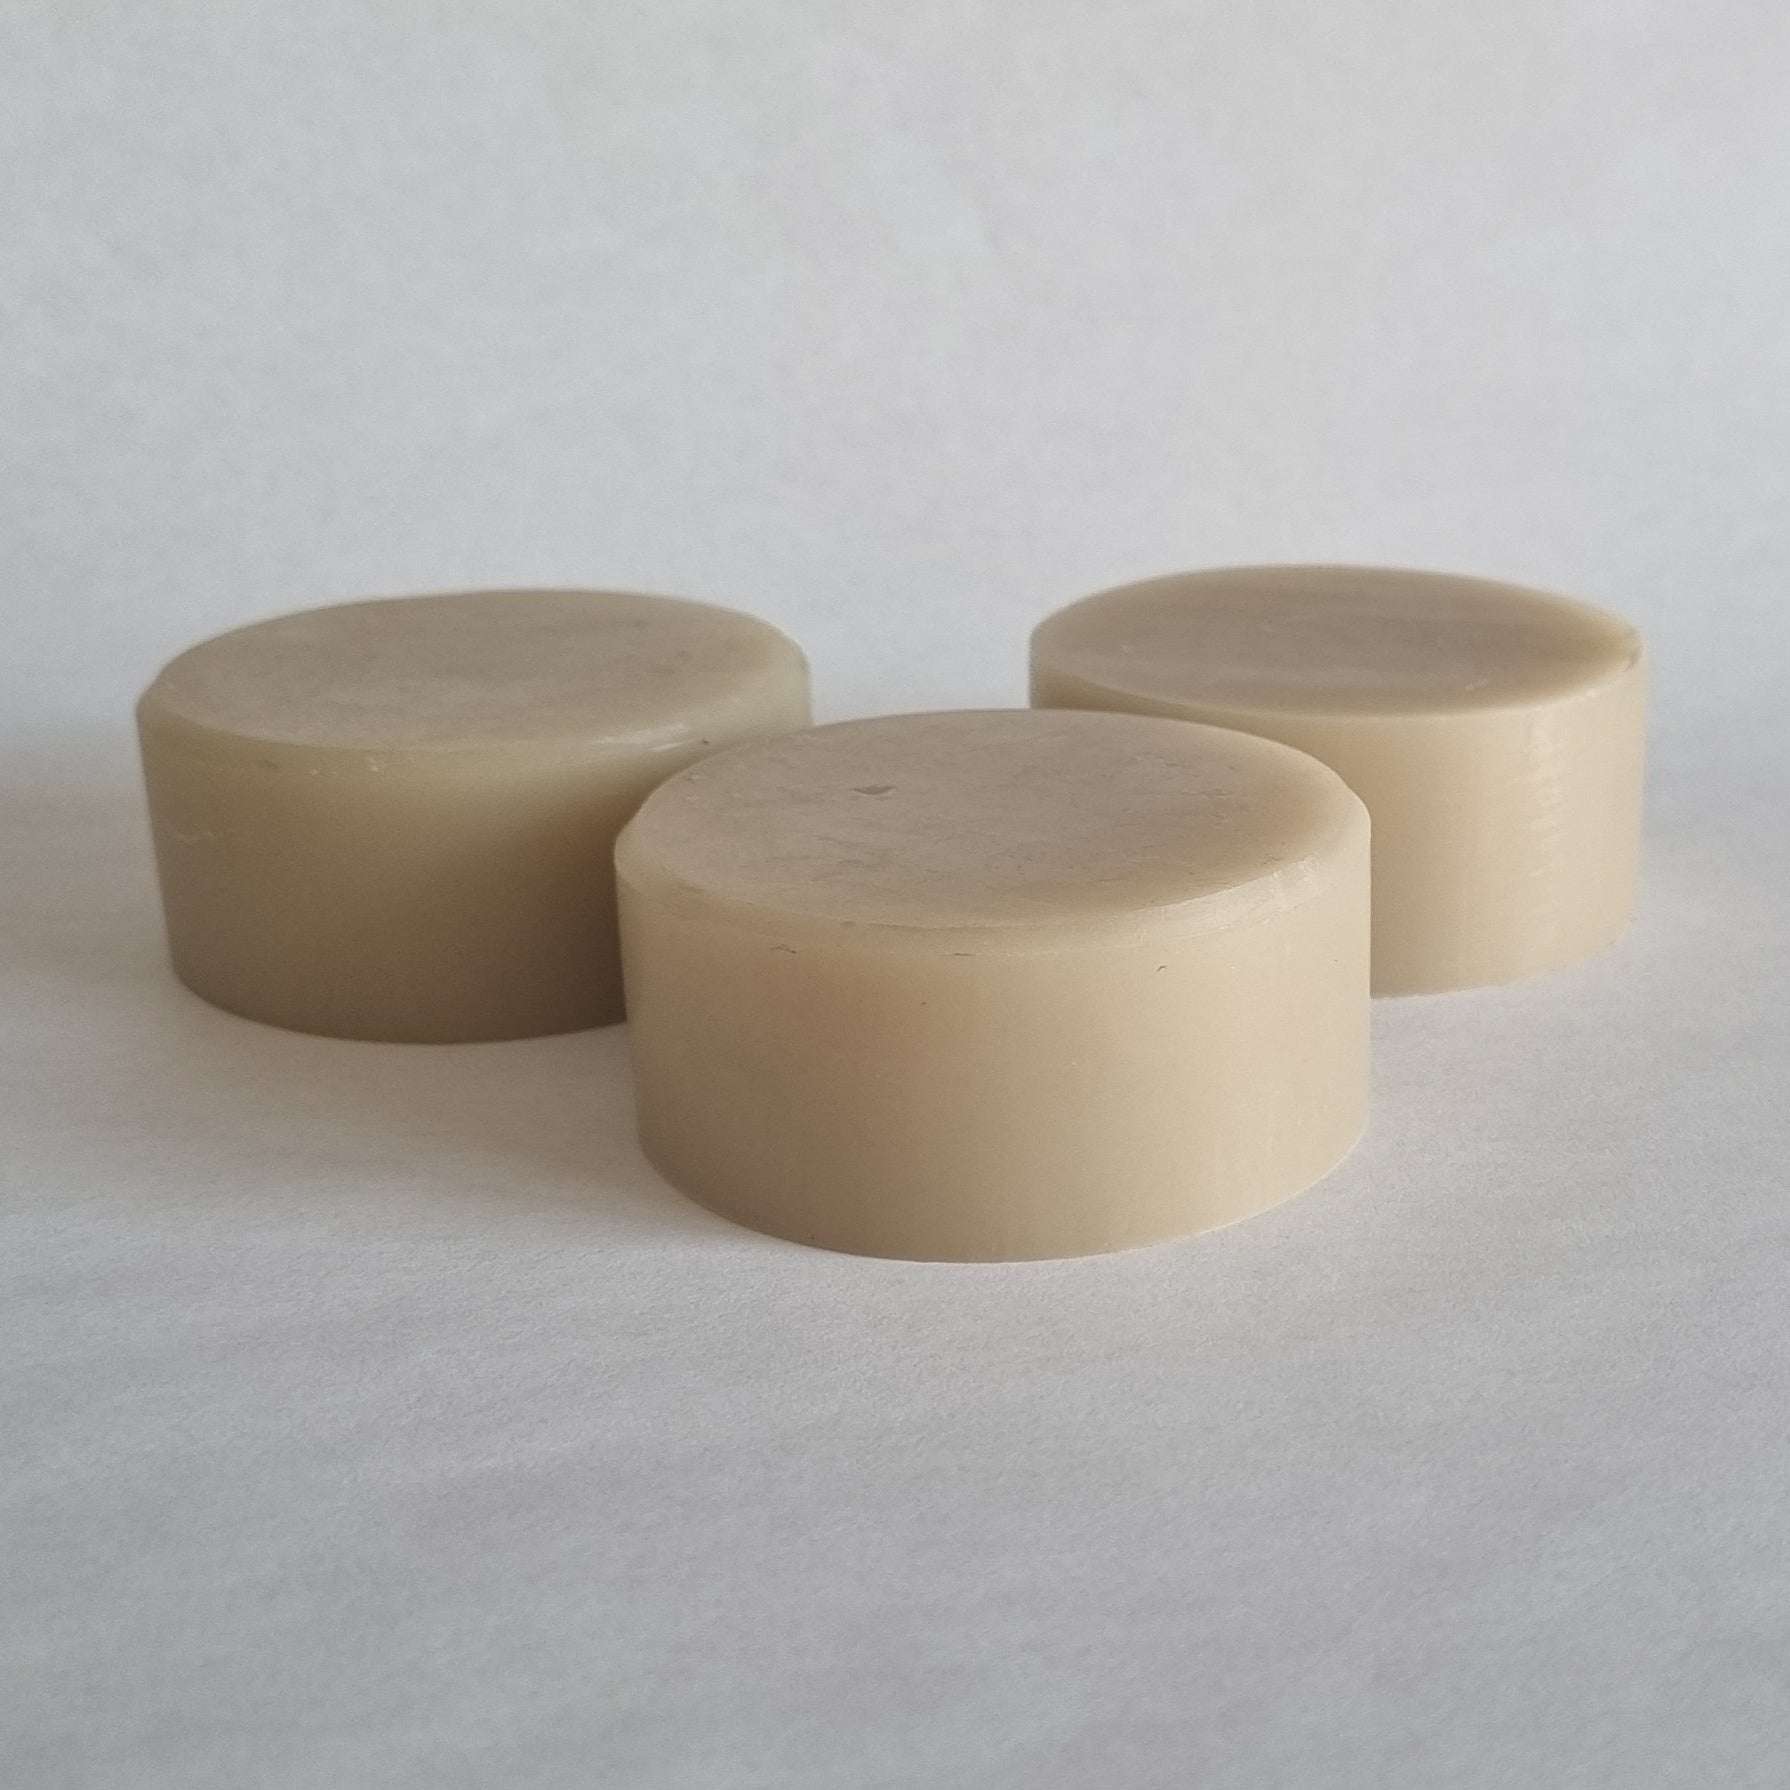 EVA Hot Melt Adhesive Cartridge Slugs (Box of 72) Unibord 786/3 by Unicol